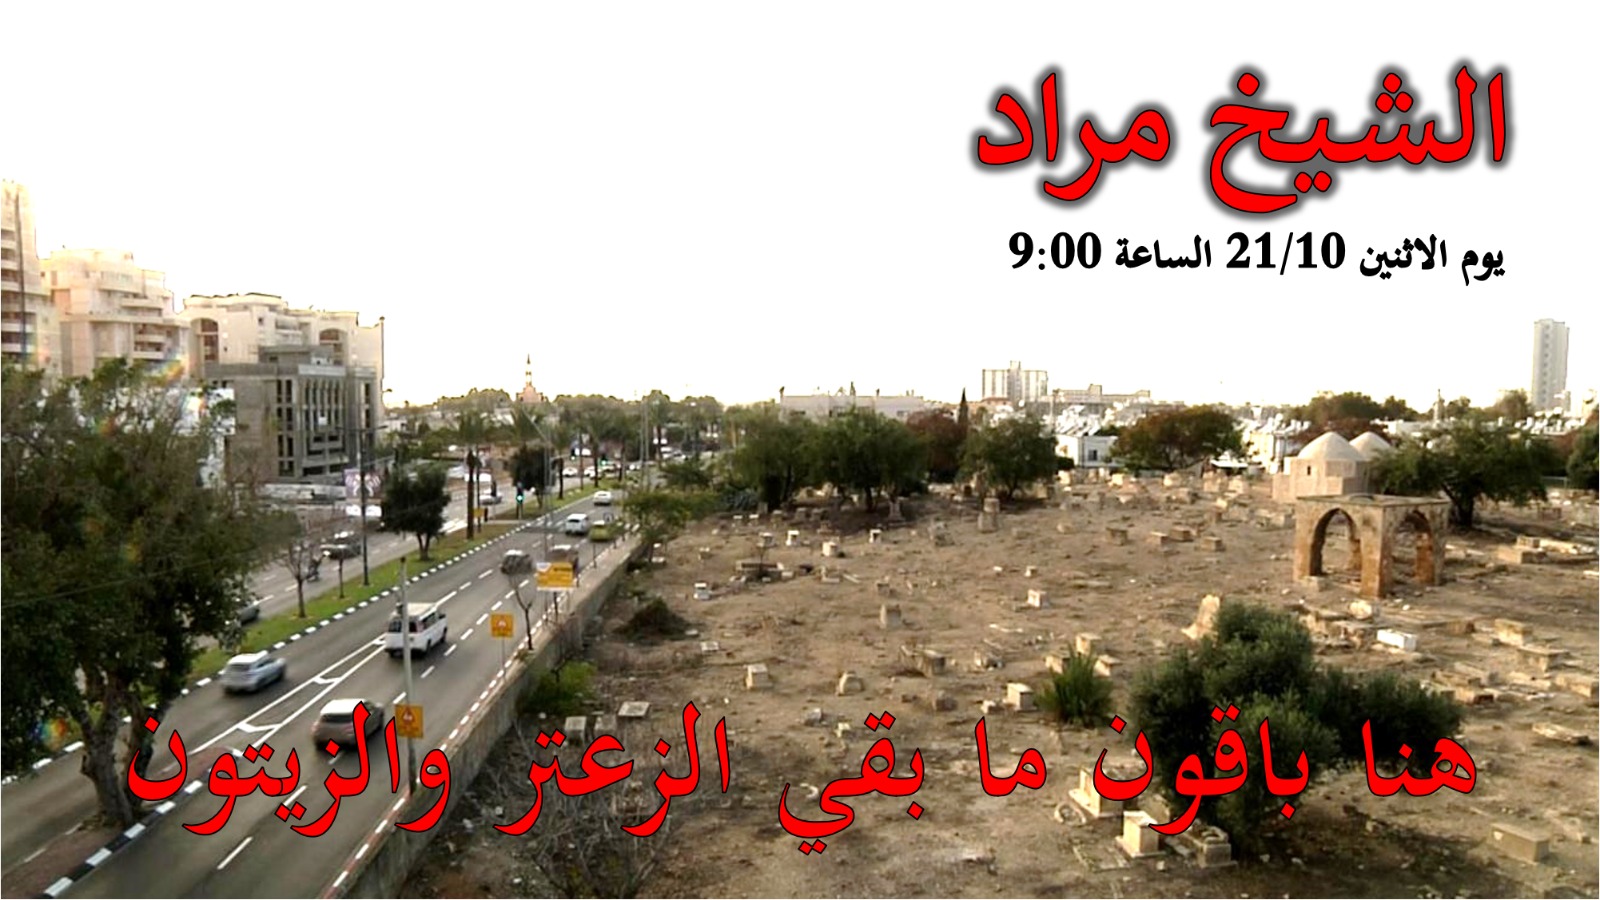 غداً: دعوة الأهالي للمشاركة في حملة تنظيف مقبرة الشيخ مراد بيافا